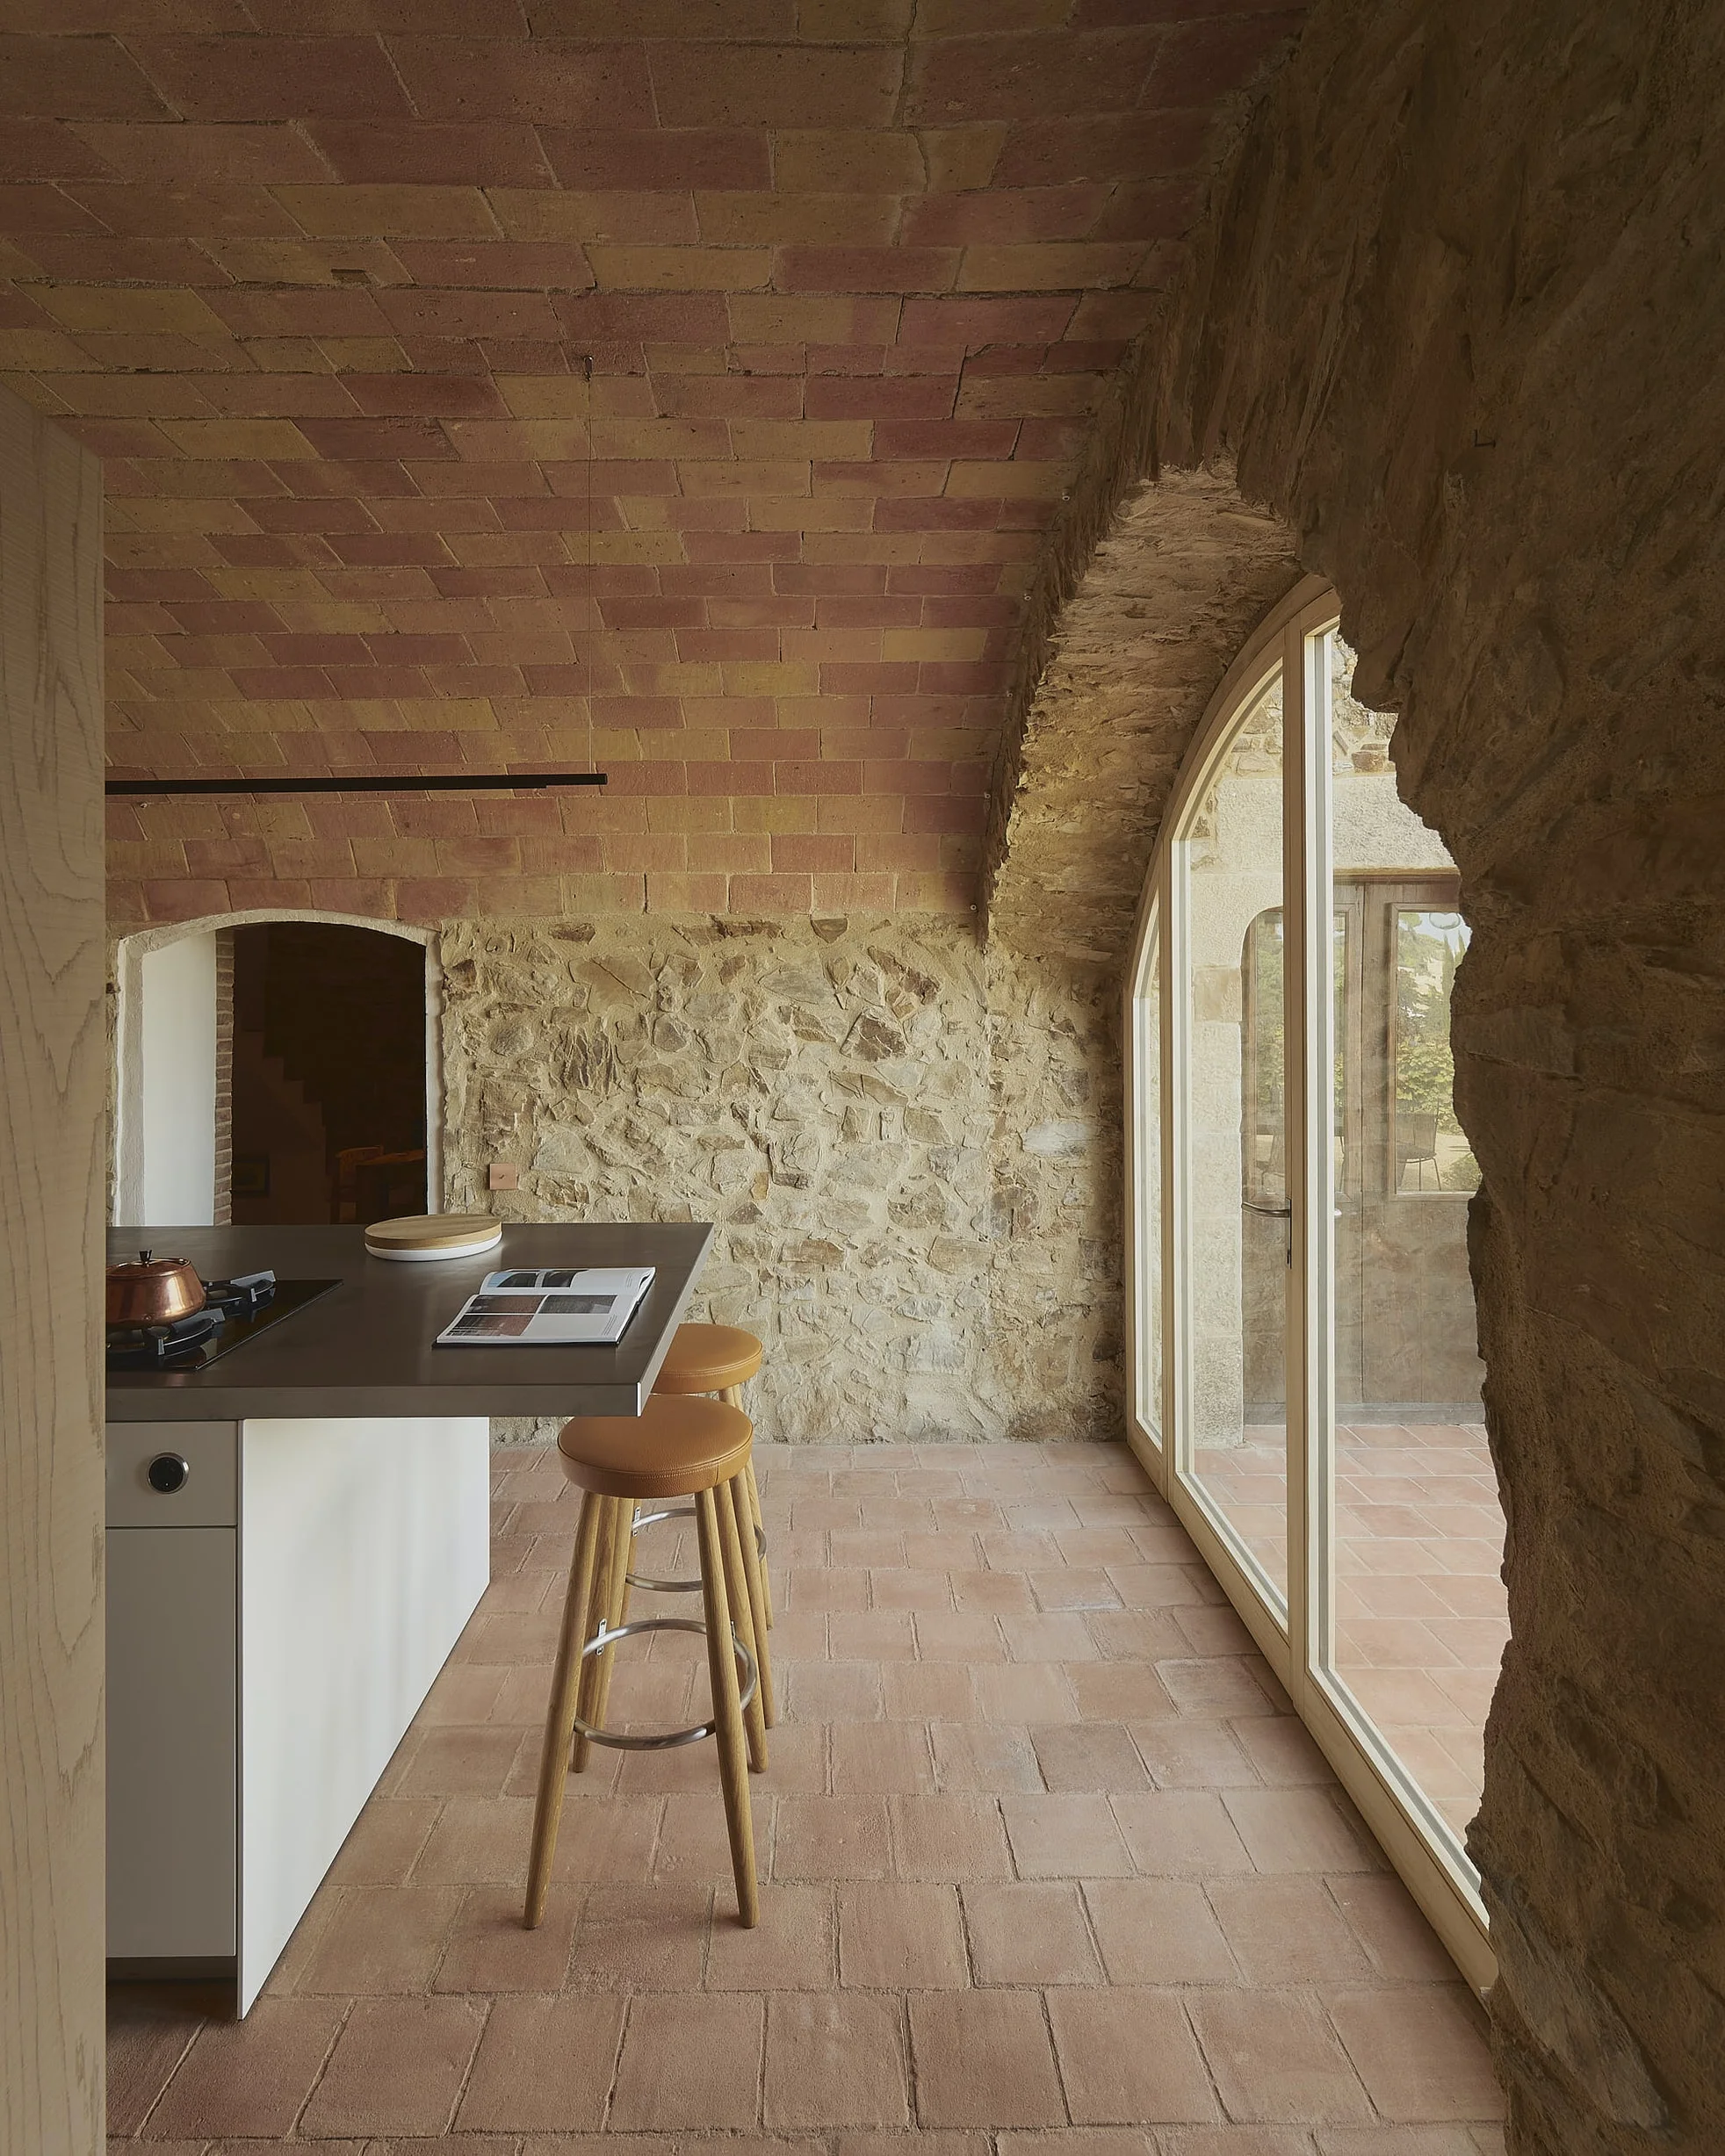 Brick Kitchen Floor 2